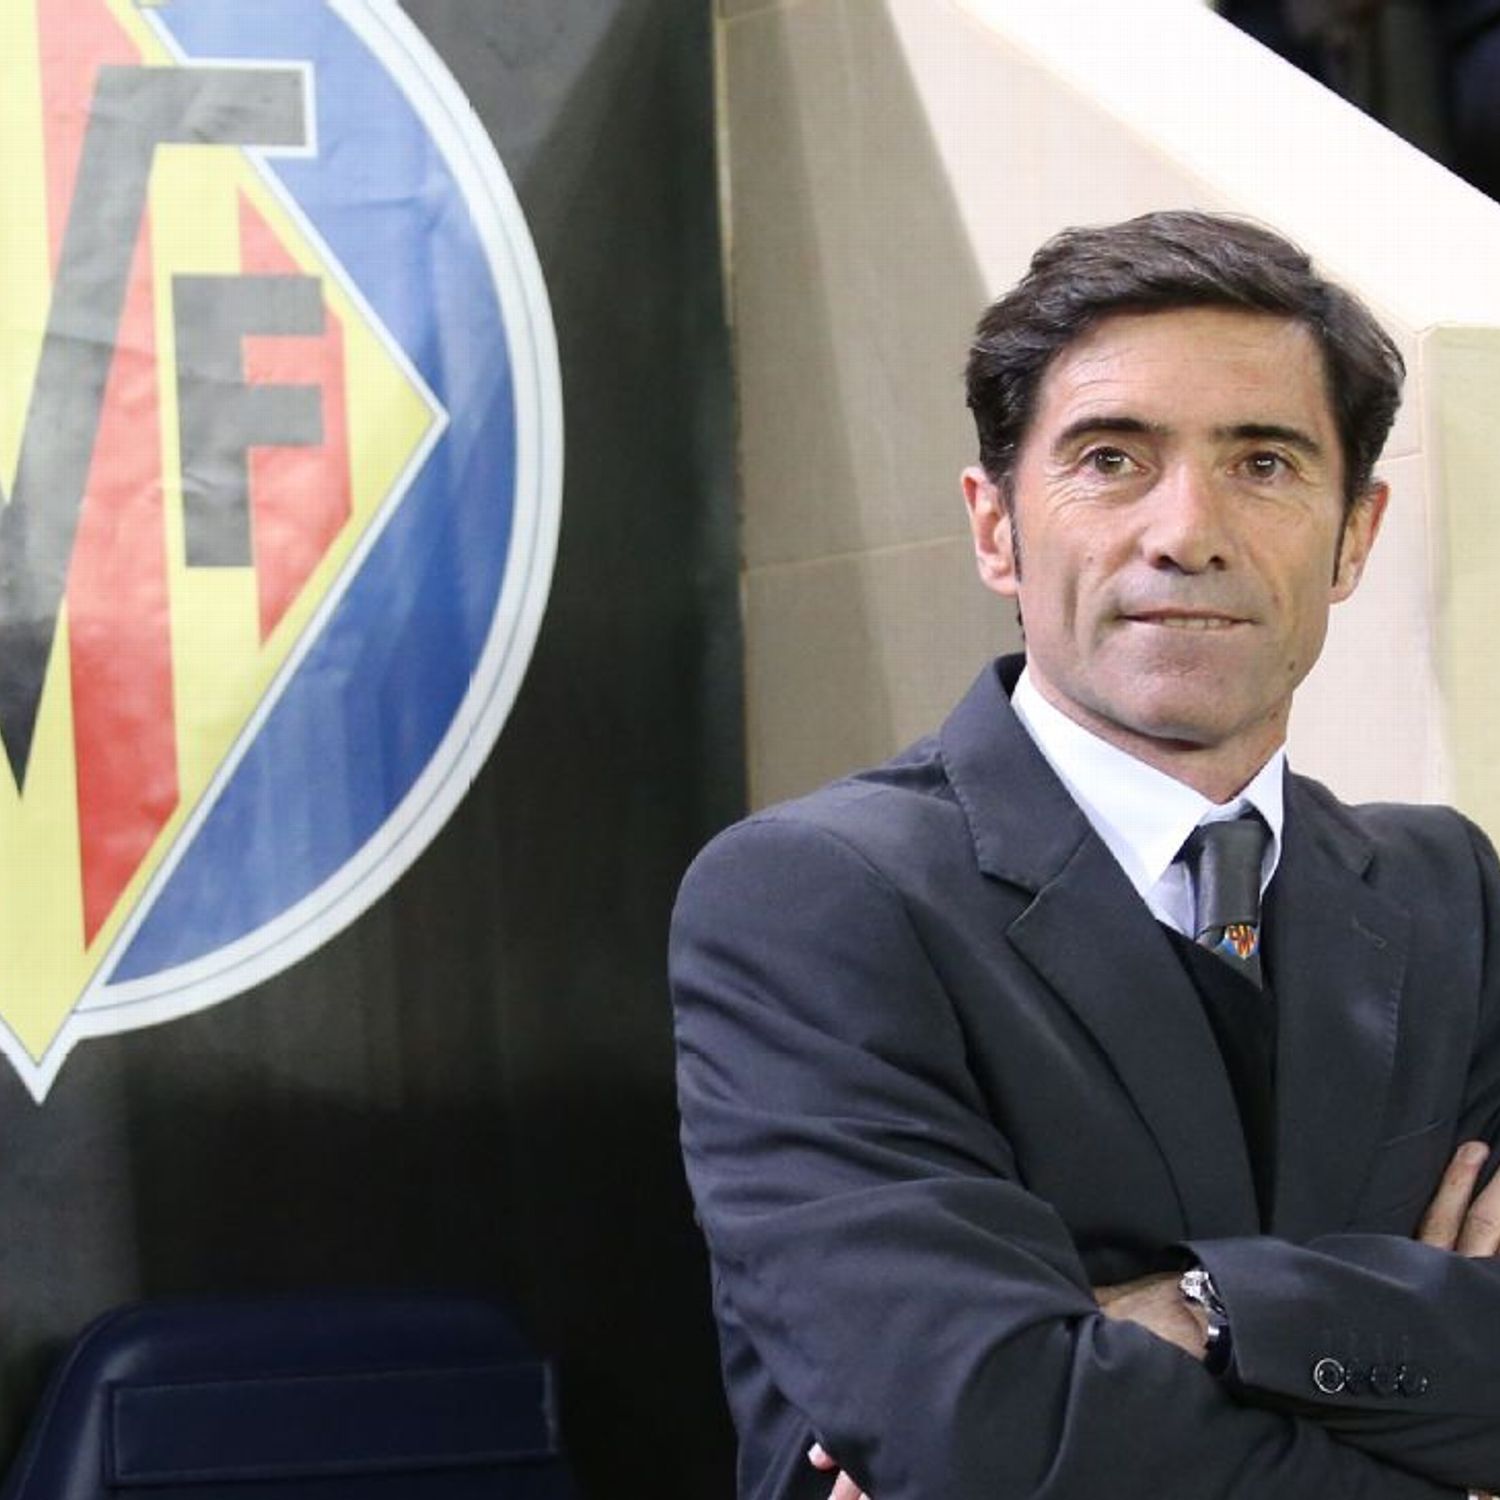 Ex-Villarreal coach Marcelino threatens to sue Rayo Vallecano chief - ESPN FC